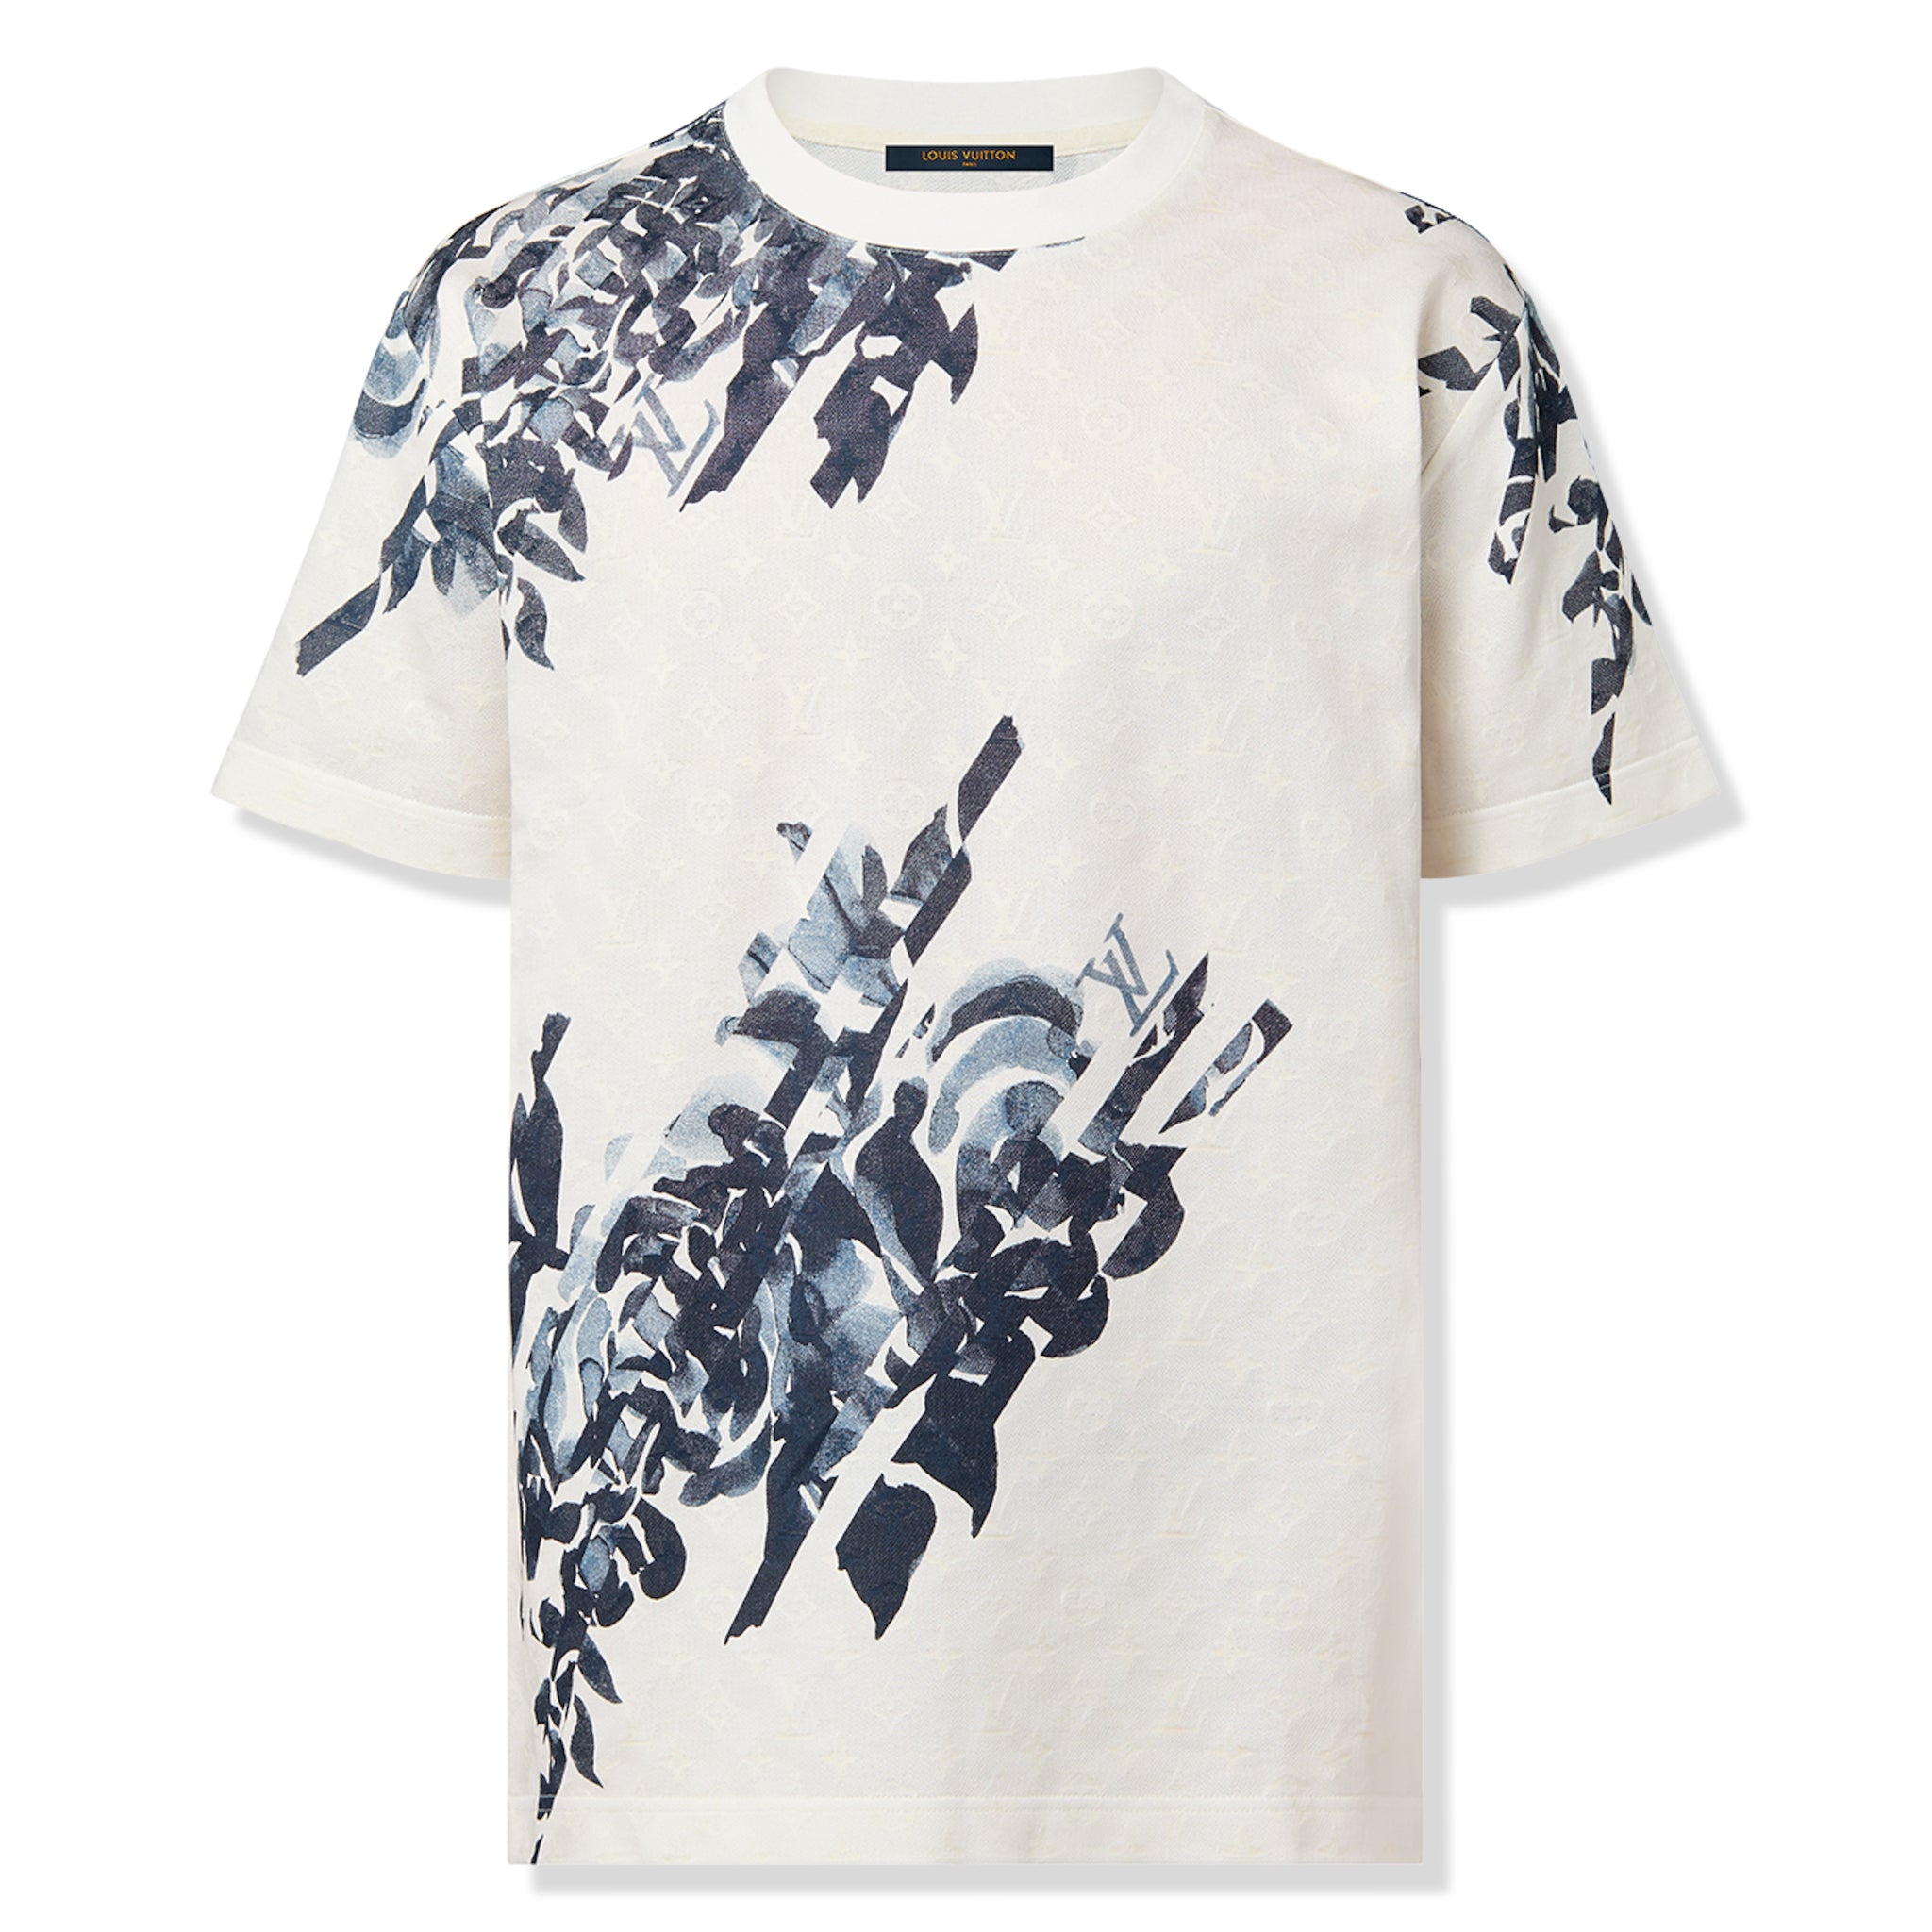 Front view of Louis Vuitton Monogram Cotton Piqué White T Shirt NVPROD4630043V\